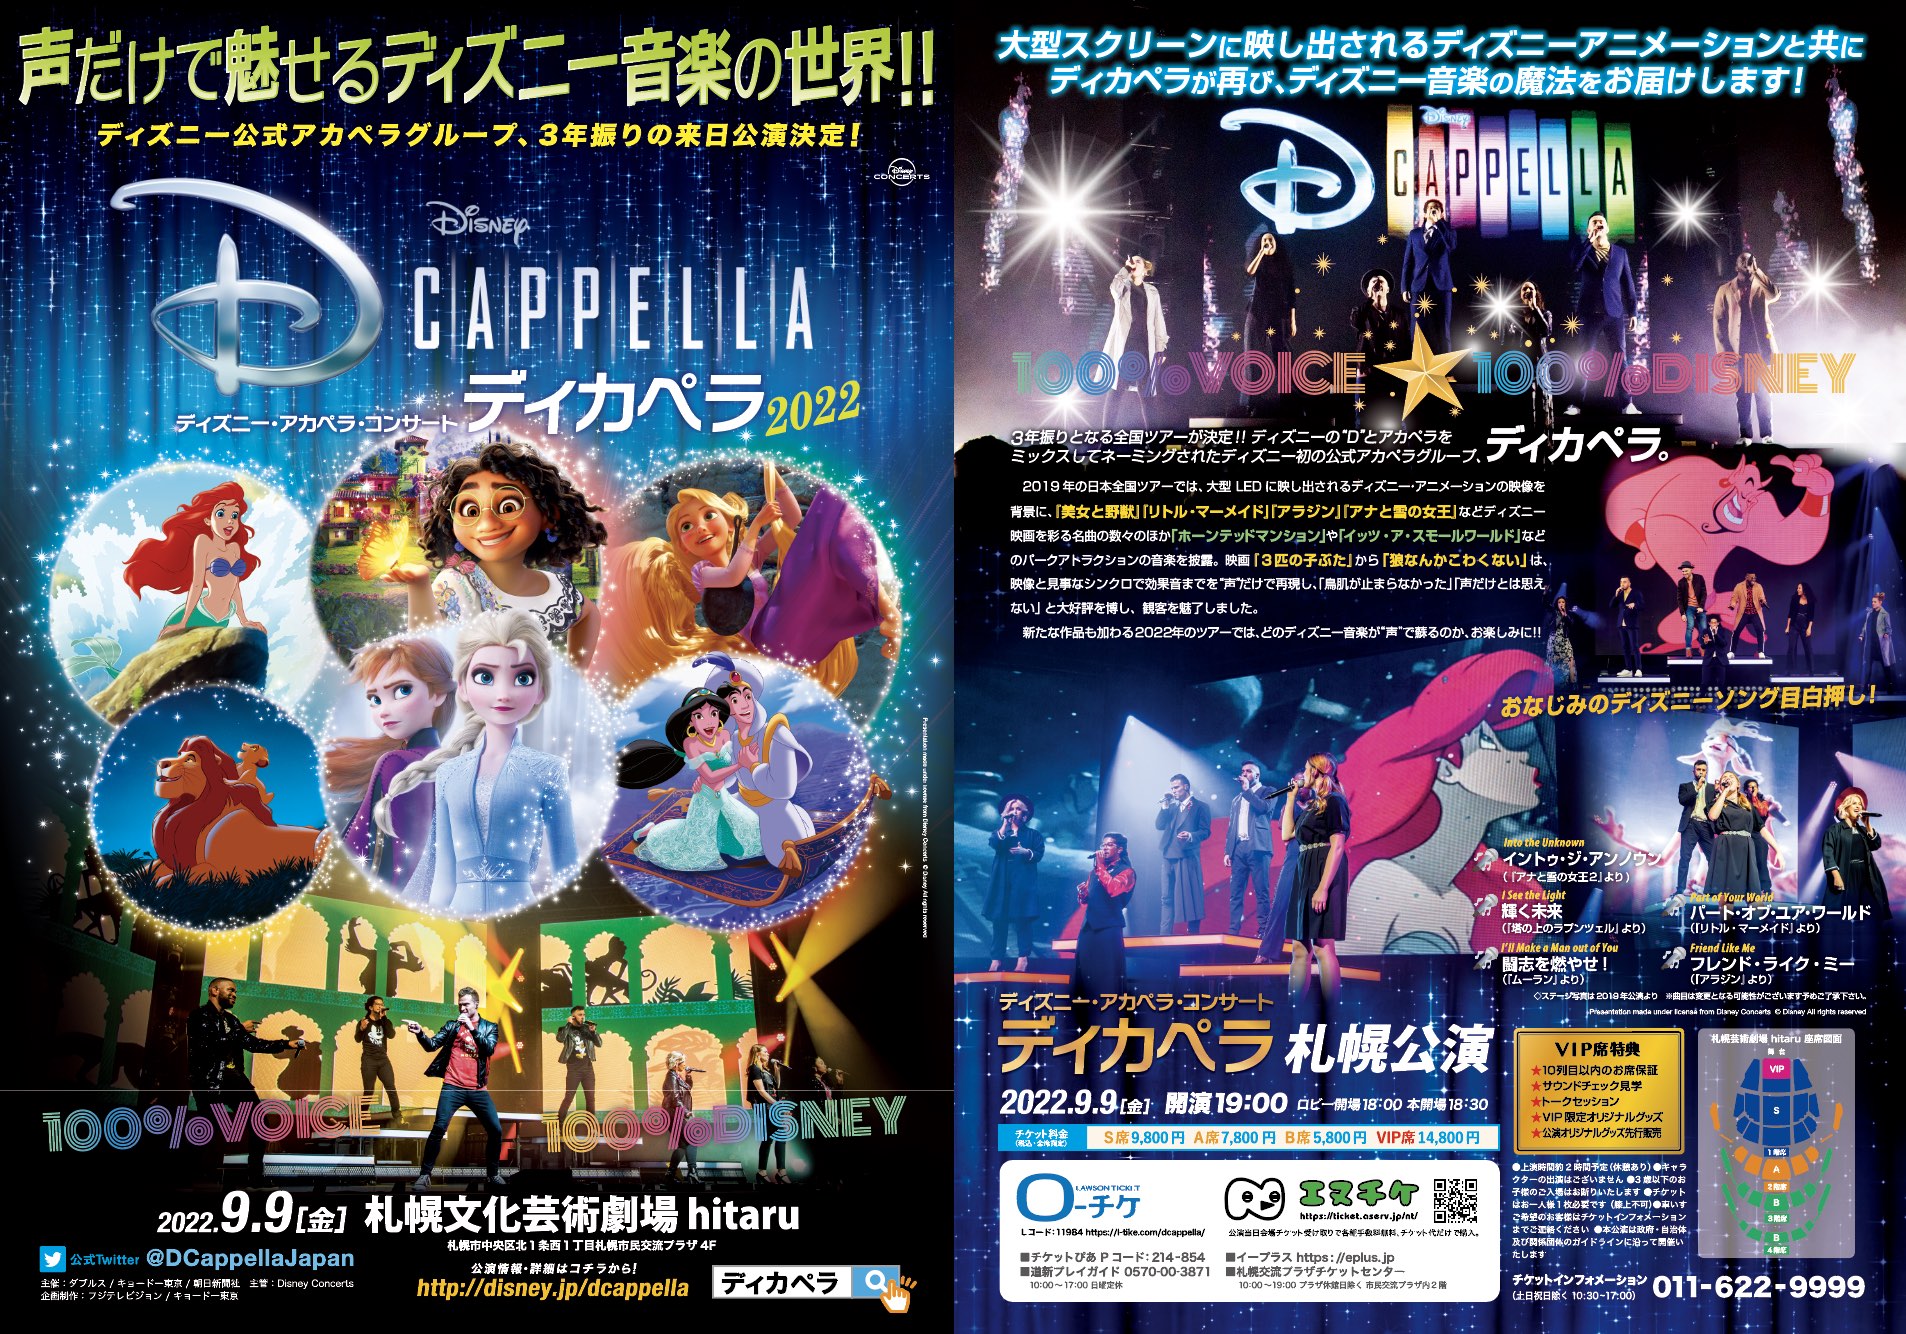 ディズニー アカペラ コンサート ディカペラ イベント情報 札幌市民交流プラザ